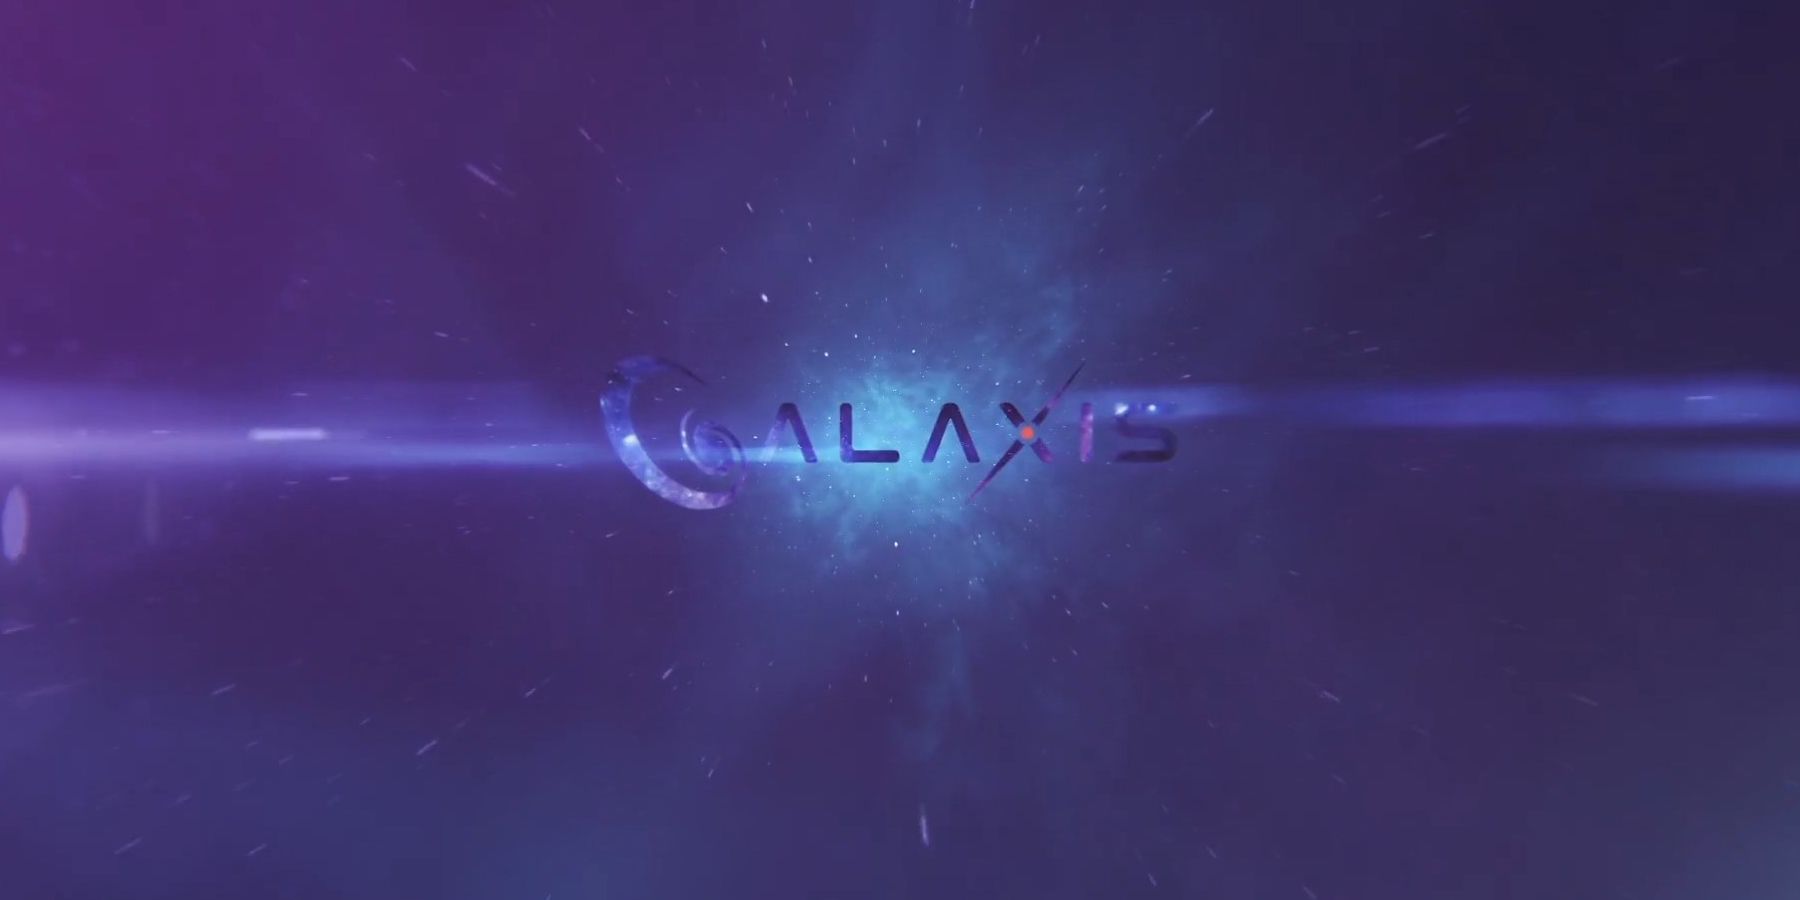 Rozhovor Galaxis: Generálny riaditeľ Max Gallardo podrobnosti o bodových systémoch Platform Streaming, Moderovanie komunity a ďalšie